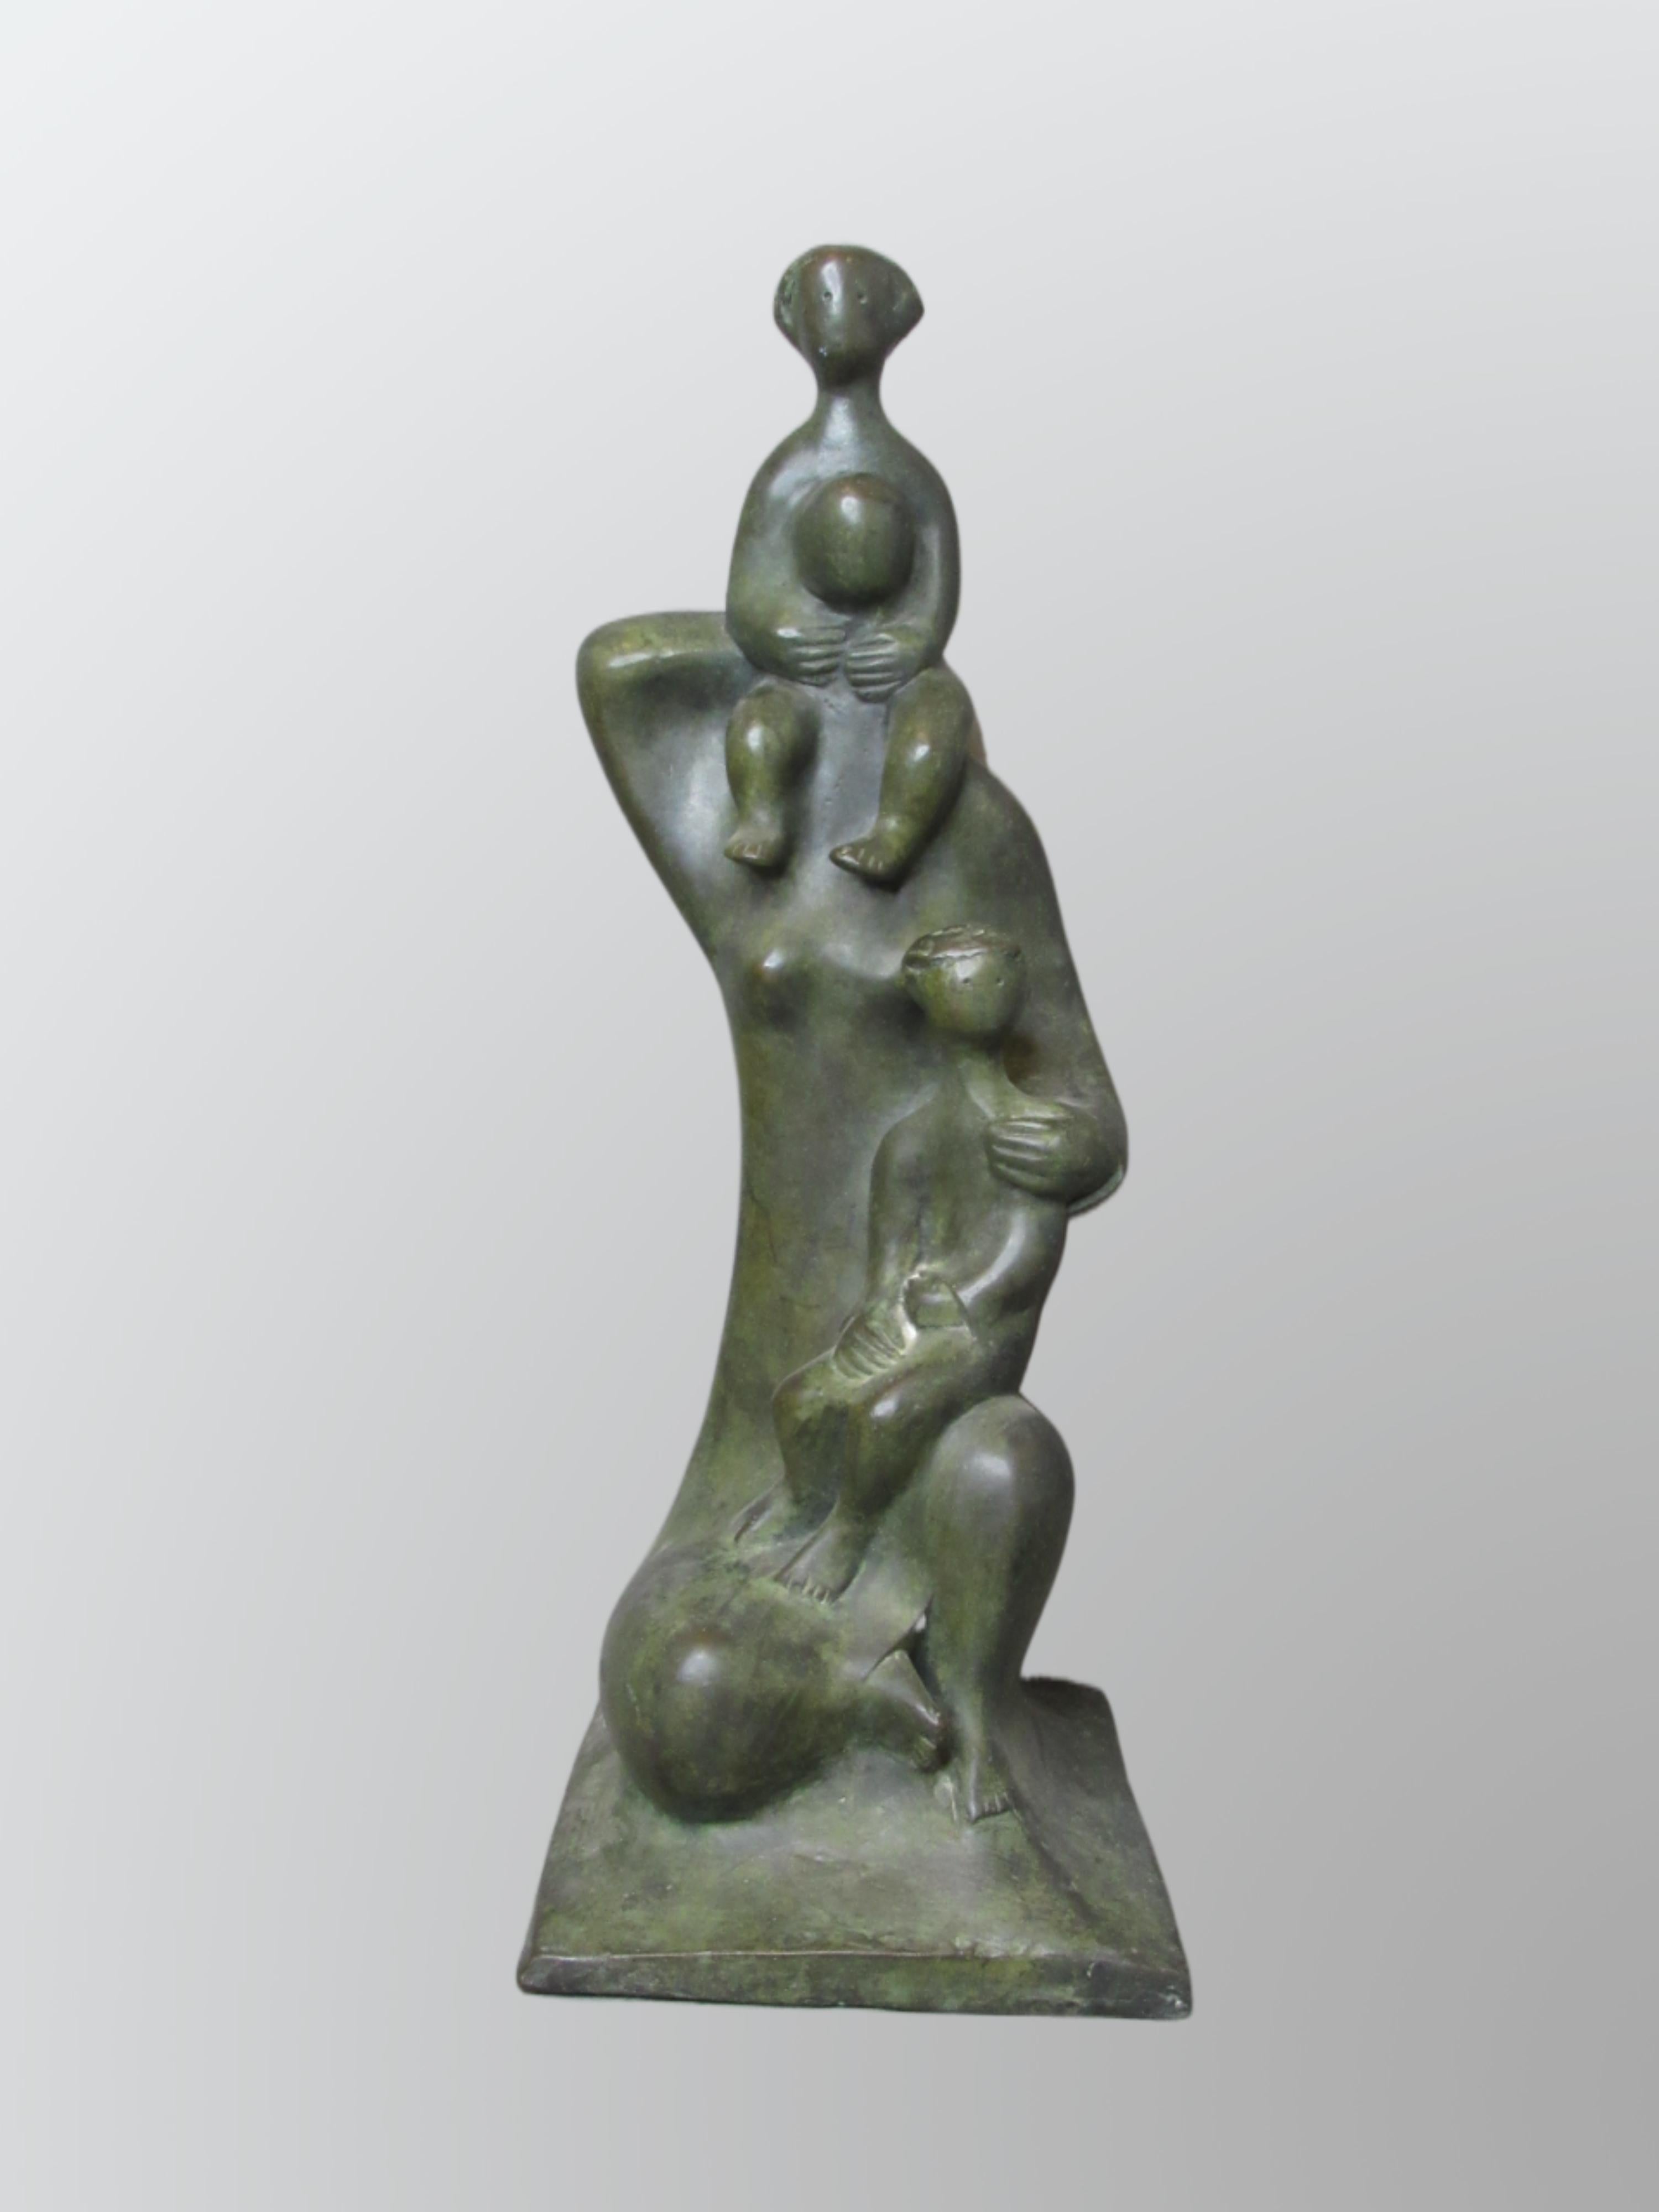 Figurative Sculpture Dani Daniel Kafri - Daniel Kafri, "Family", 1989, sculpture en bronze, 27x17x19 cm